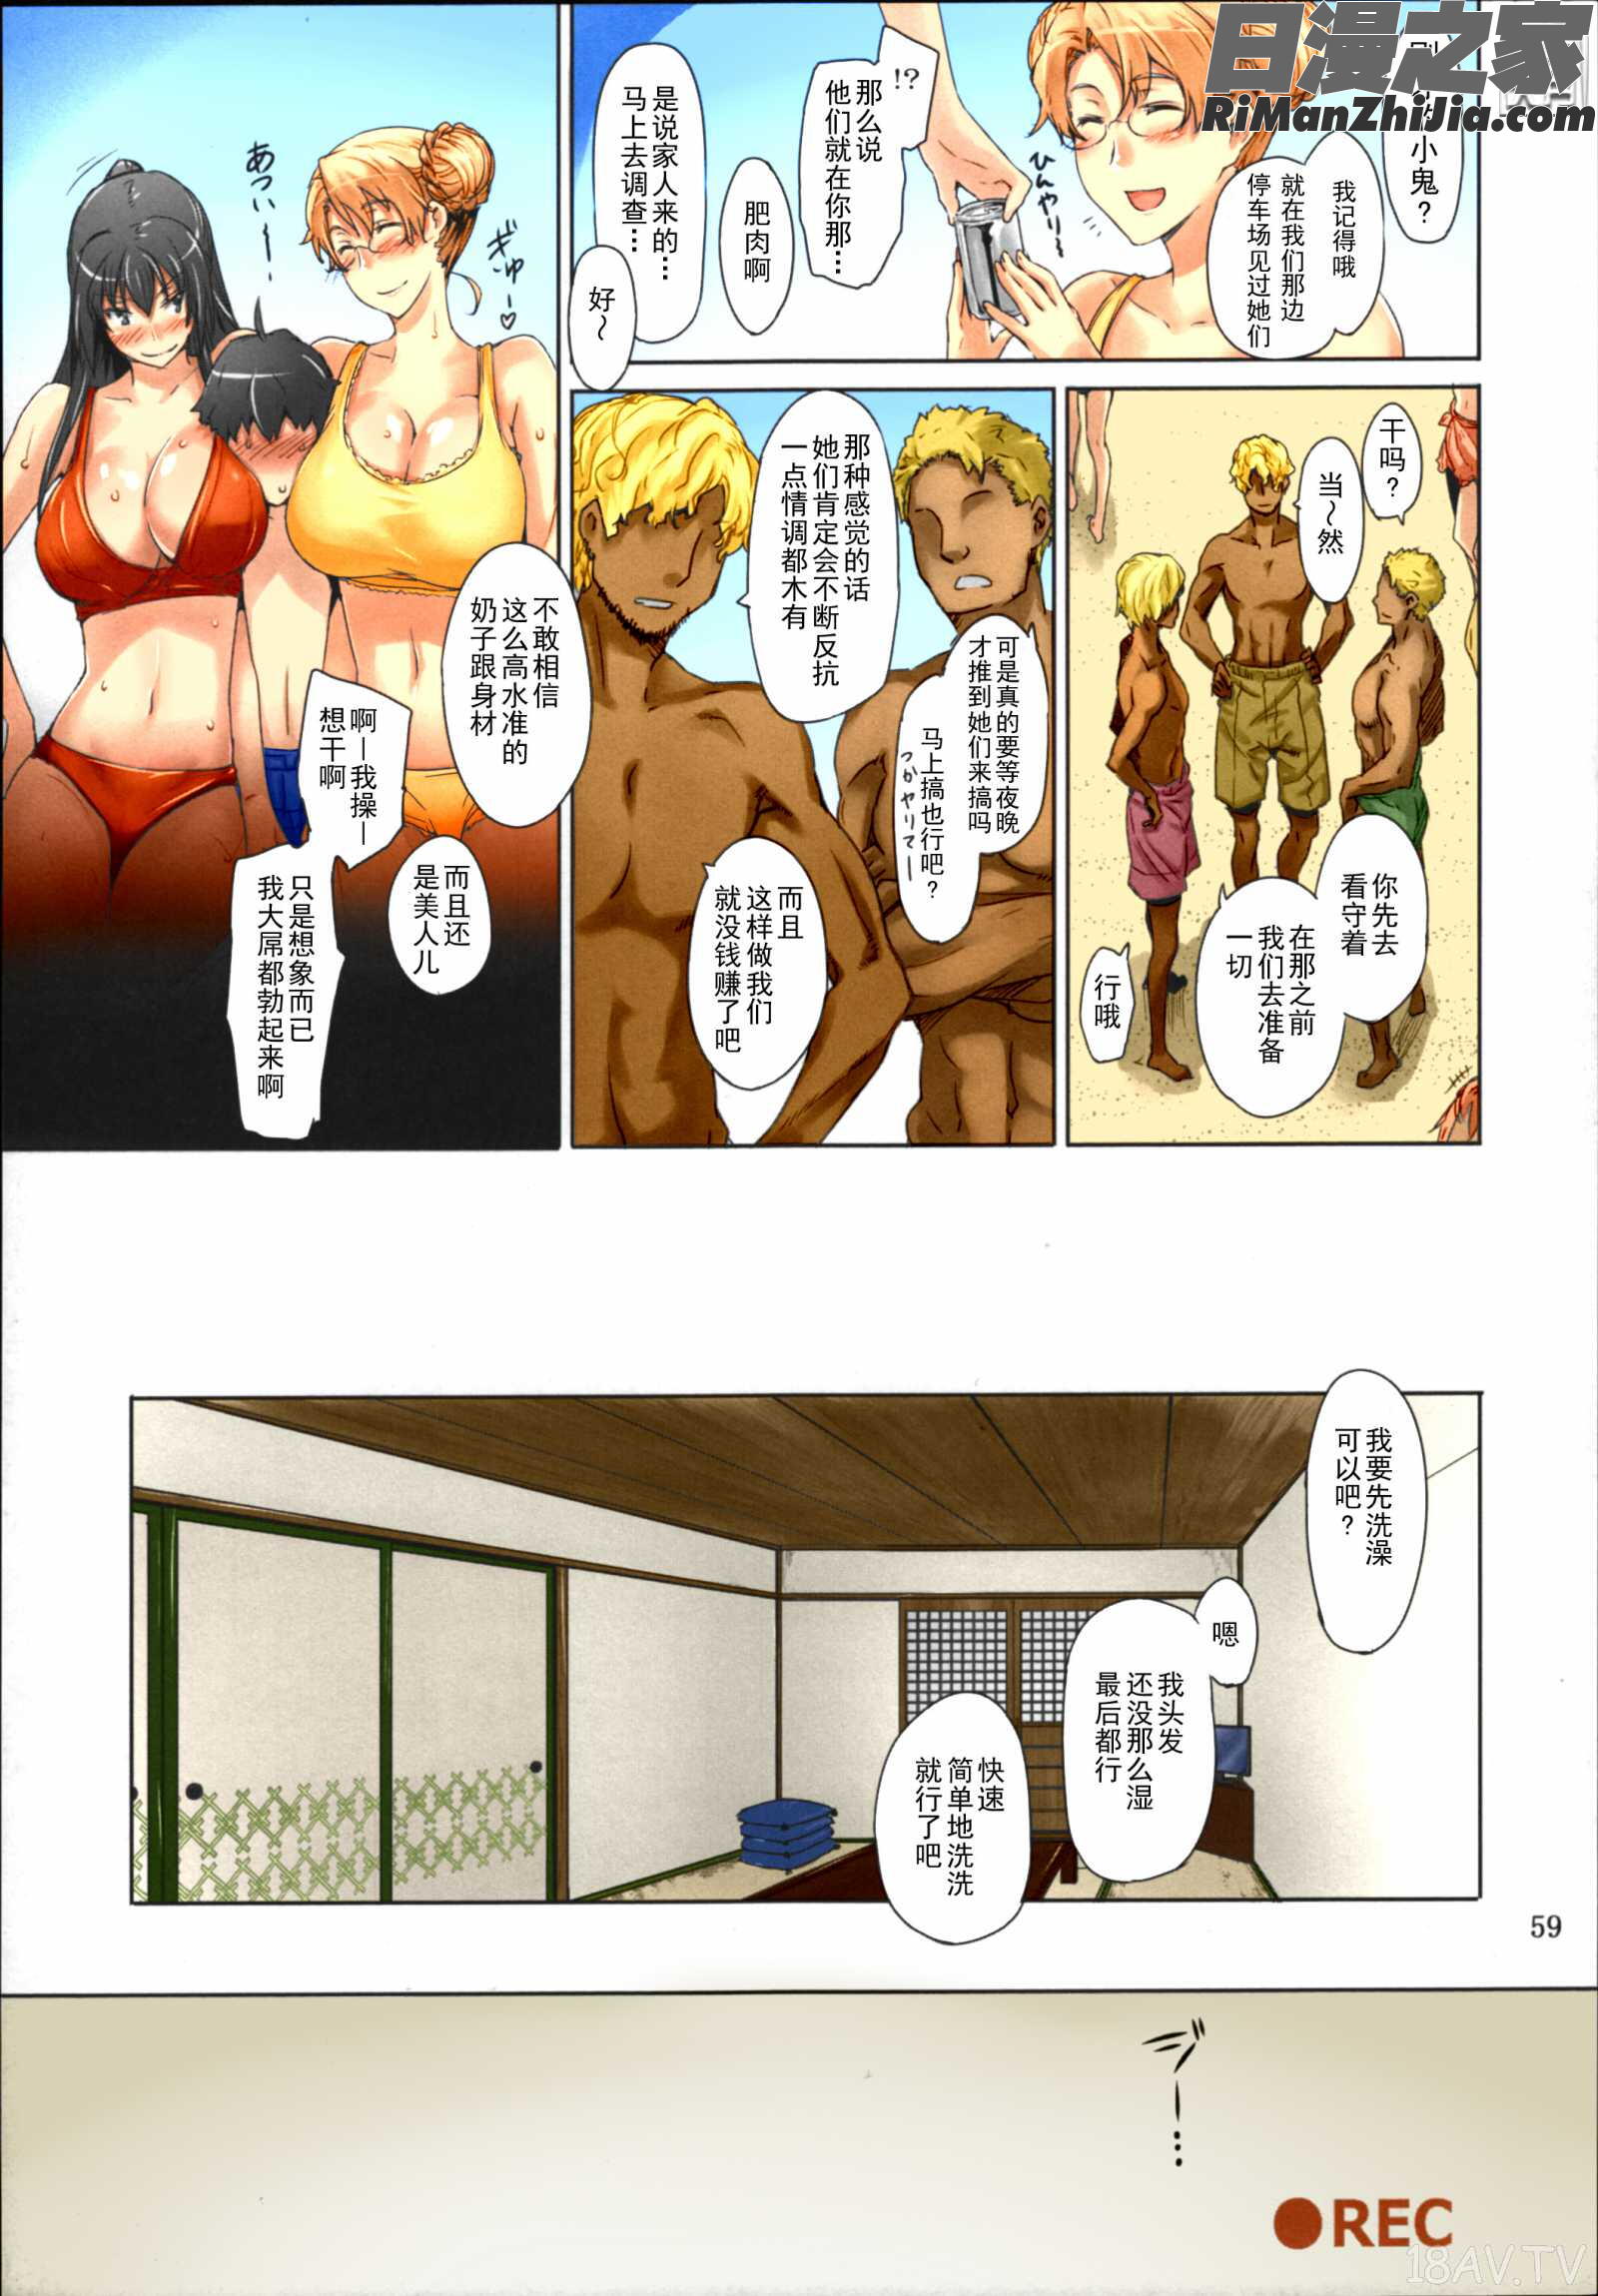 橘さん家ノ男性事情まとめ版漫画 免费阅读 整部漫画 61.jpg